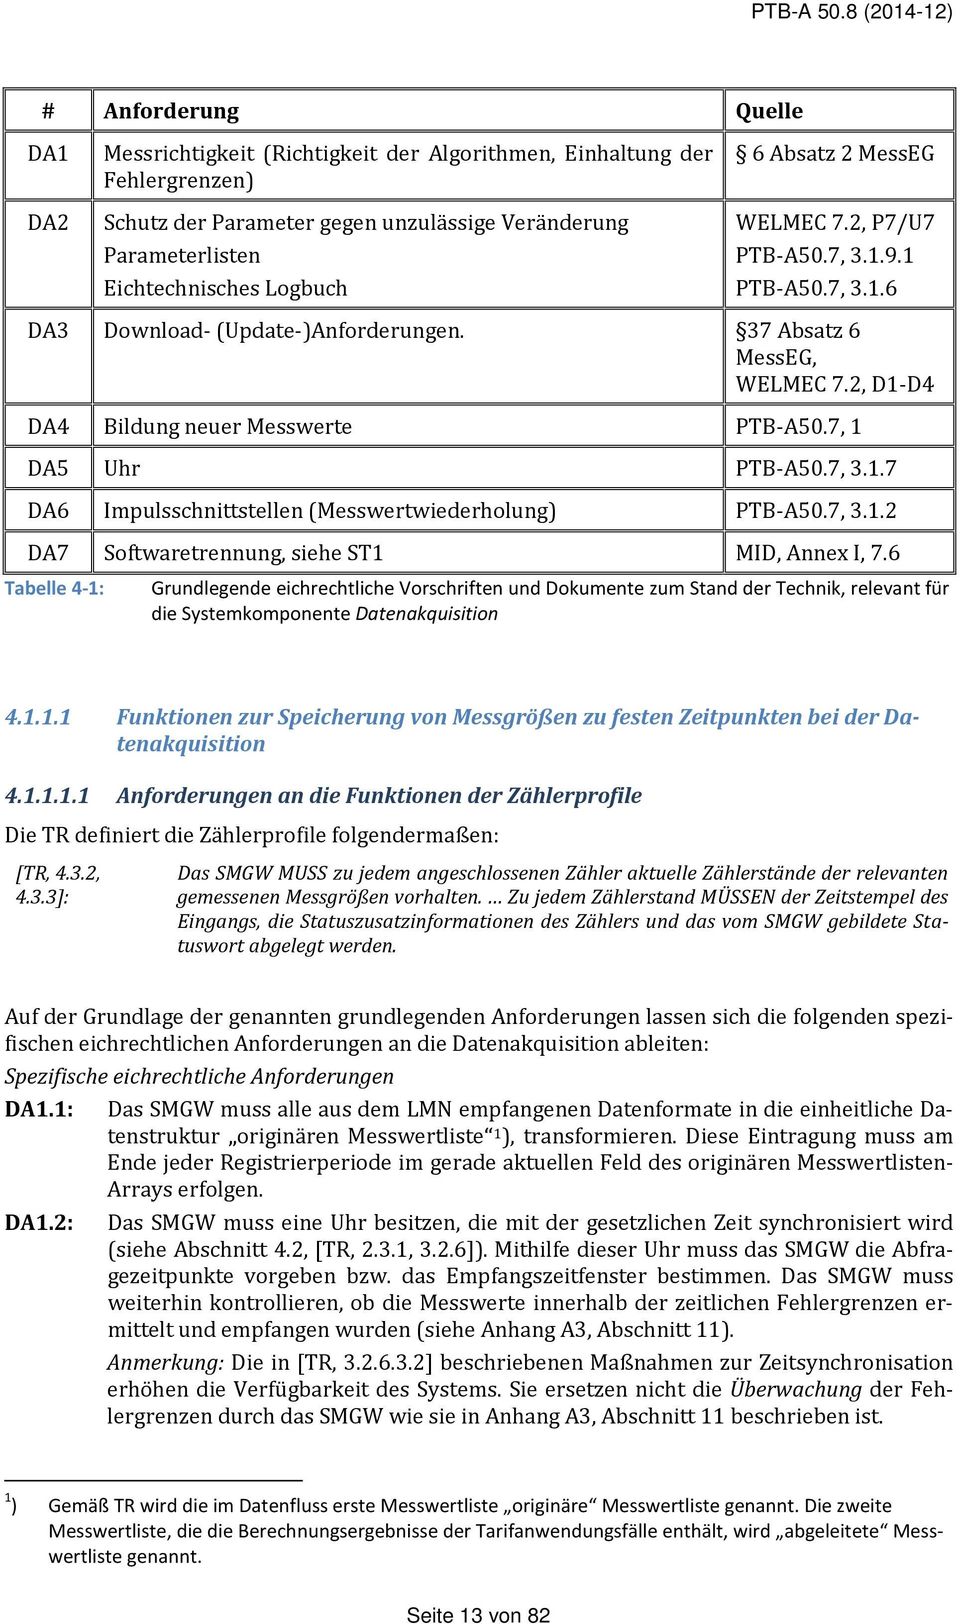 Logbuch 6 Absatz 2 MessEG WELMEC 7.2, P7/U7 PTB-A50.7, 3.1.9.1 PTB-A50.7, 3.1.6 DA3 Download- (Update-)Anforderungen. 37 Absatz 6 MessEG, WELMEC 7.2, D1-D4 DA4 Bildung neuer Messwerte PTB-A50.